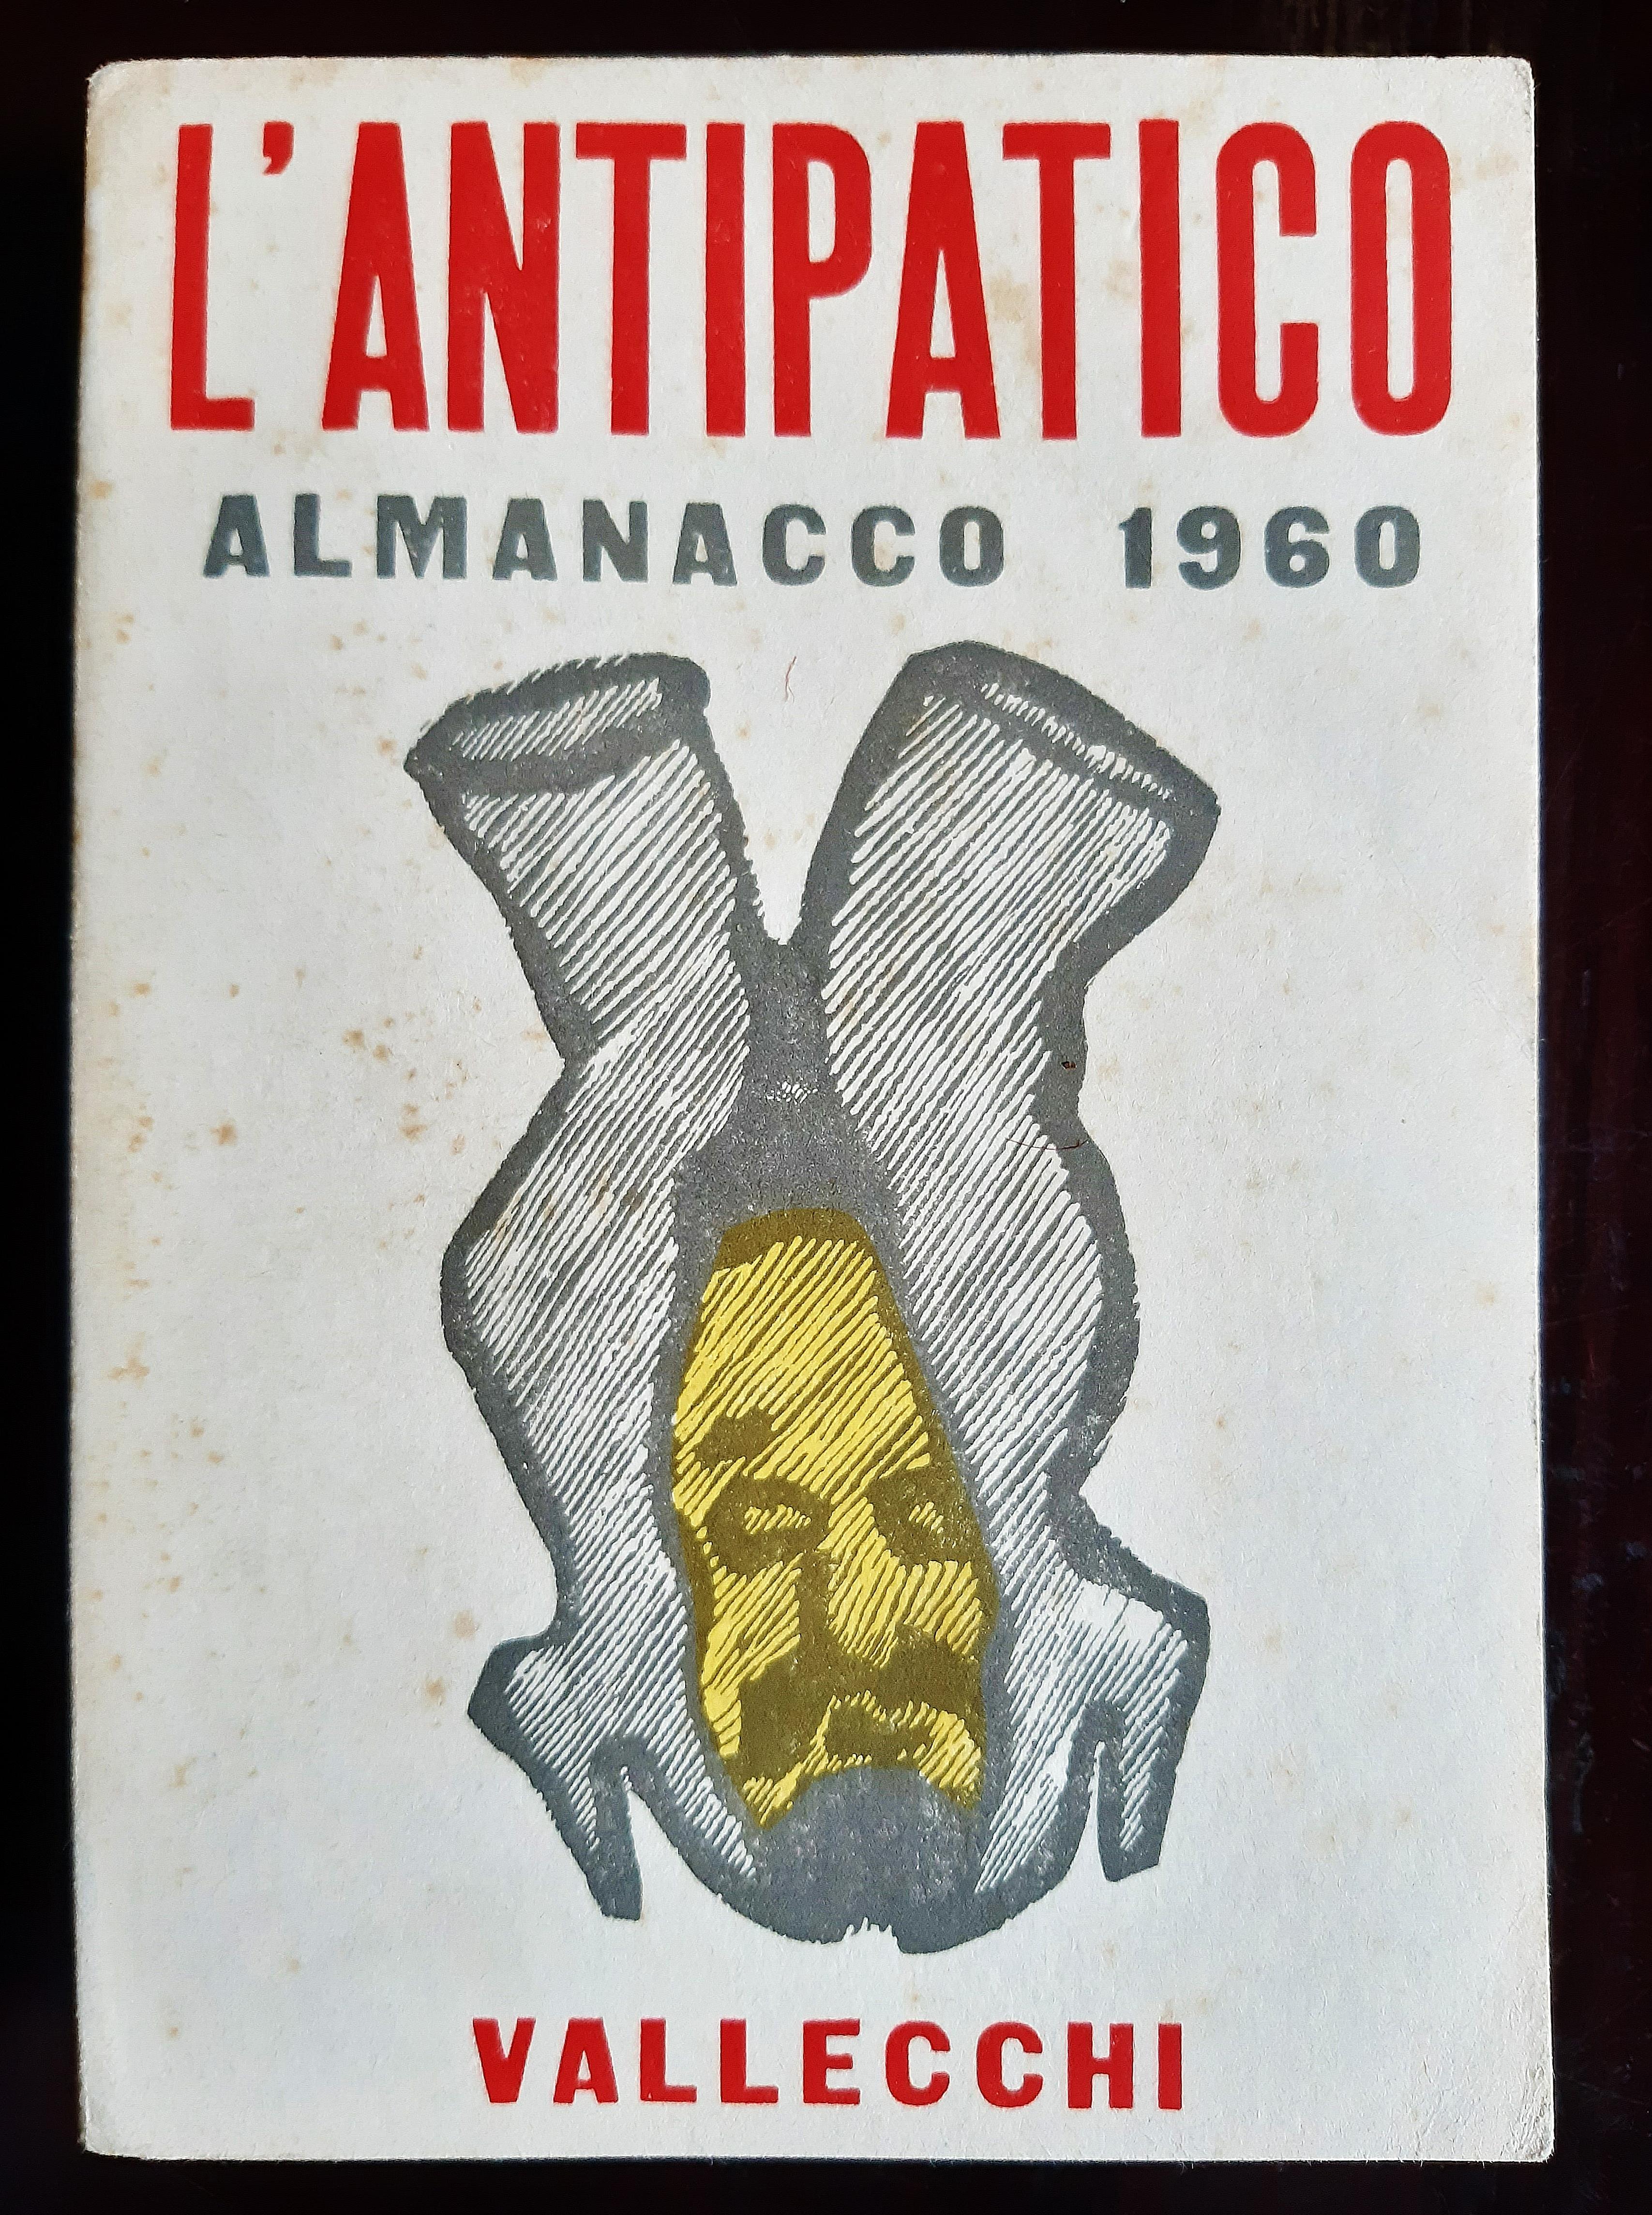 LAntipatico – Almanacco – Seltenes Buch, illustriert von Mino Maccari – 1959